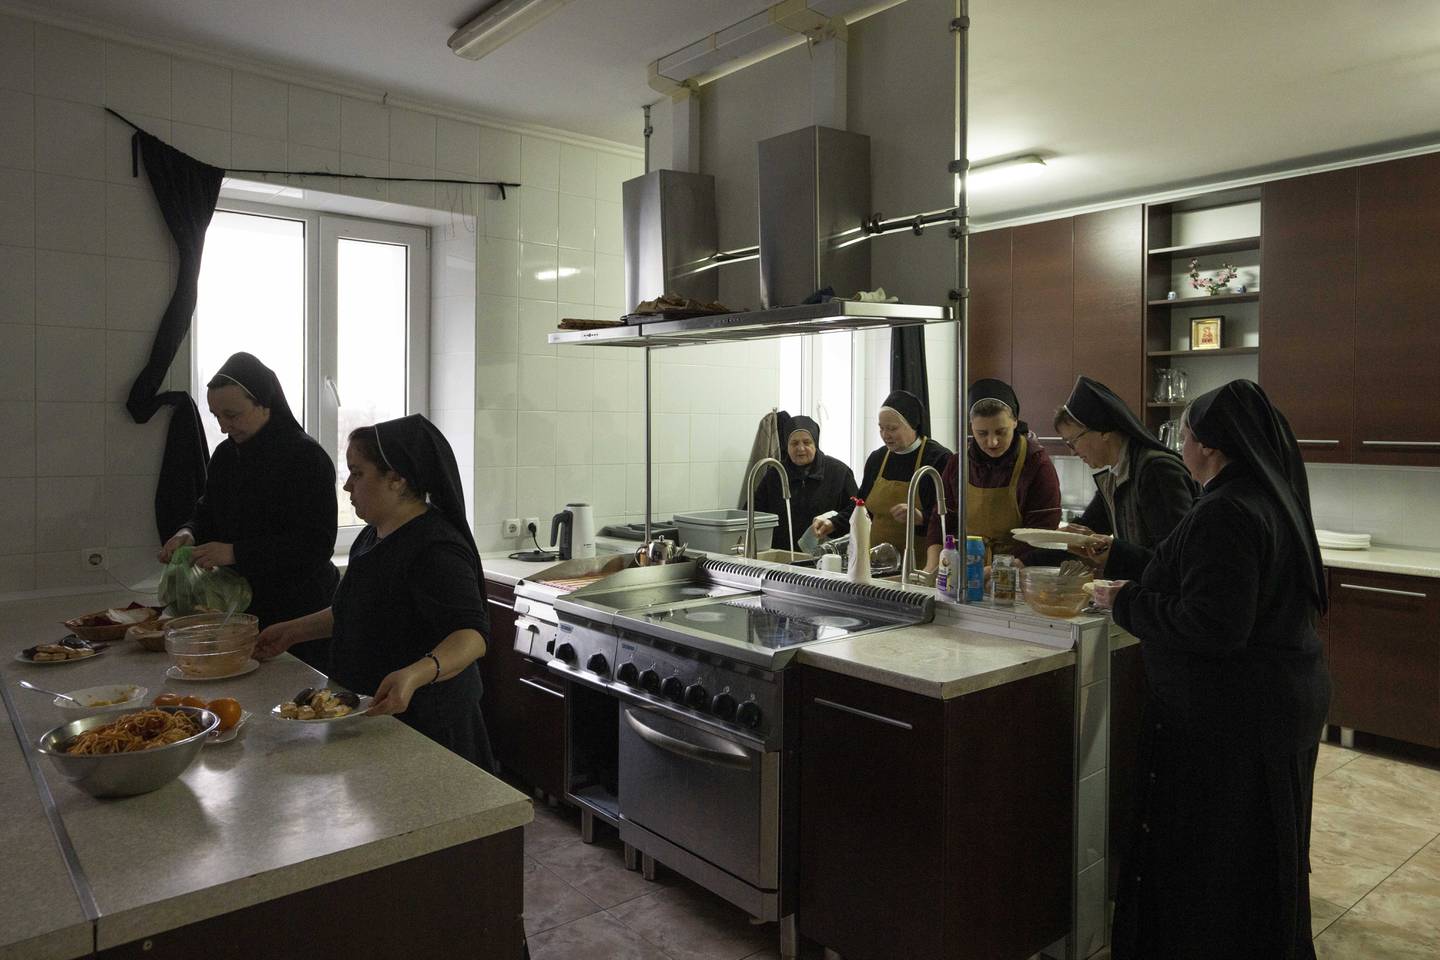 Nonner vasker opp etter middag. Middagen inntar de i biblioteket, mens familiene bruker spisesalen. Krigen har gjort livet i klosteret svært annerledes. Foto: Nariman El-Mofty / AP / NTB